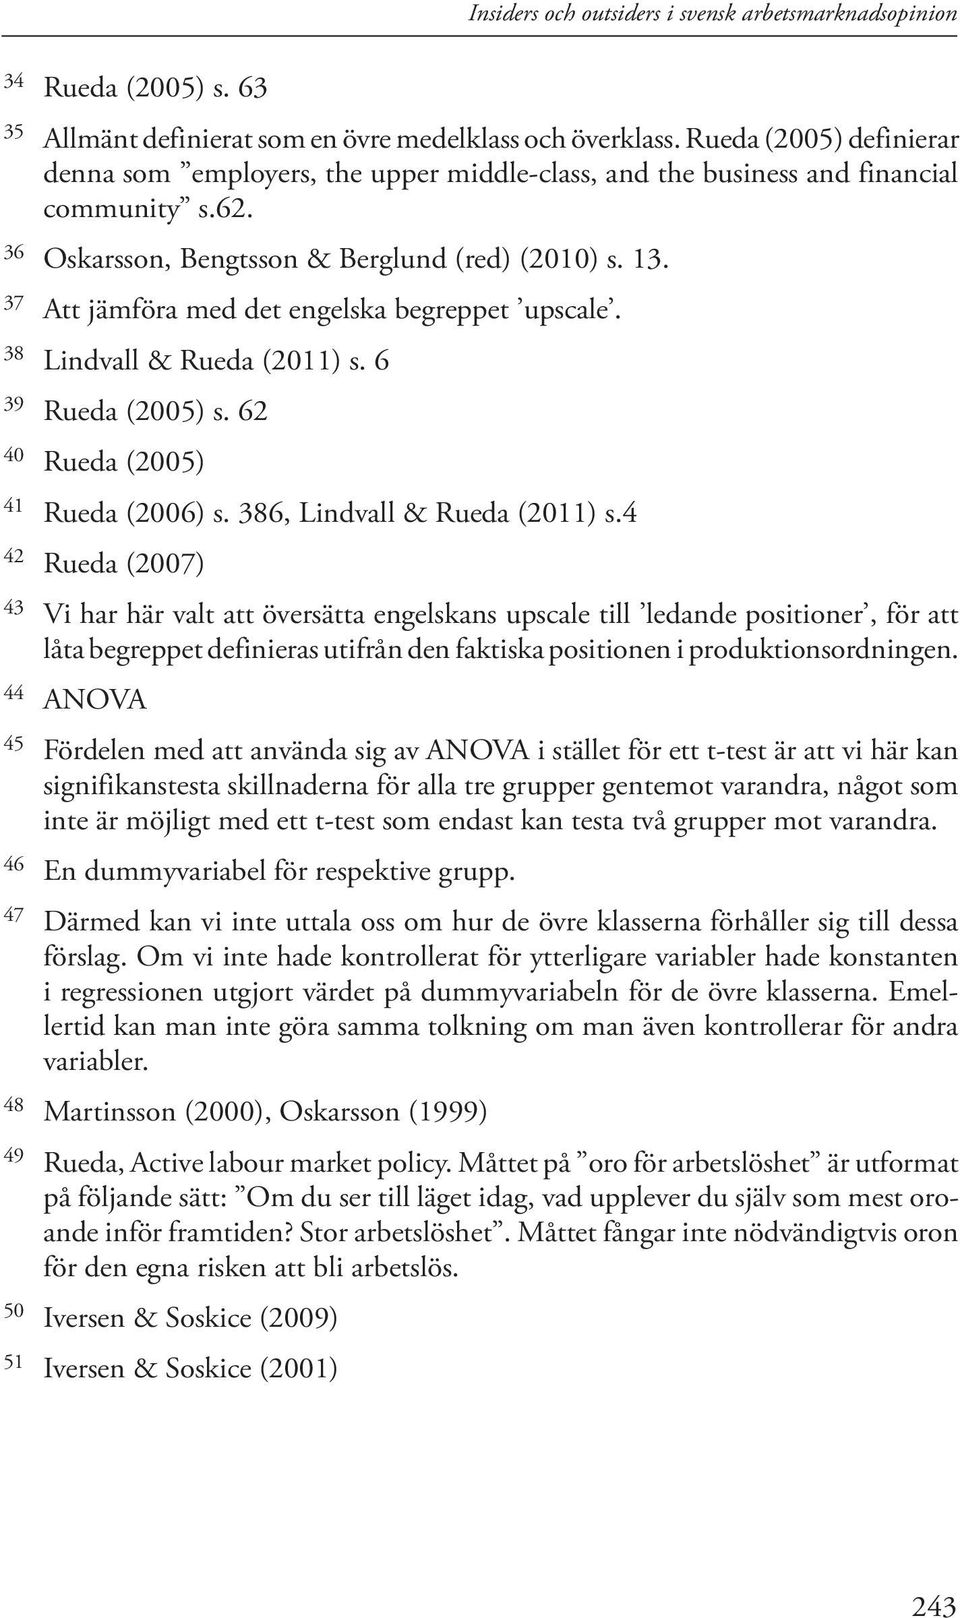 37 Att jämföra med det engelska begreppet upscale. 38 Lindvall & Rueda (2011) s. 6 39 Rueda (2005) s. 62 40 Rueda (2005) 41 Rueda (2006) s. 386, Lindvall & Rueda (2011) s.